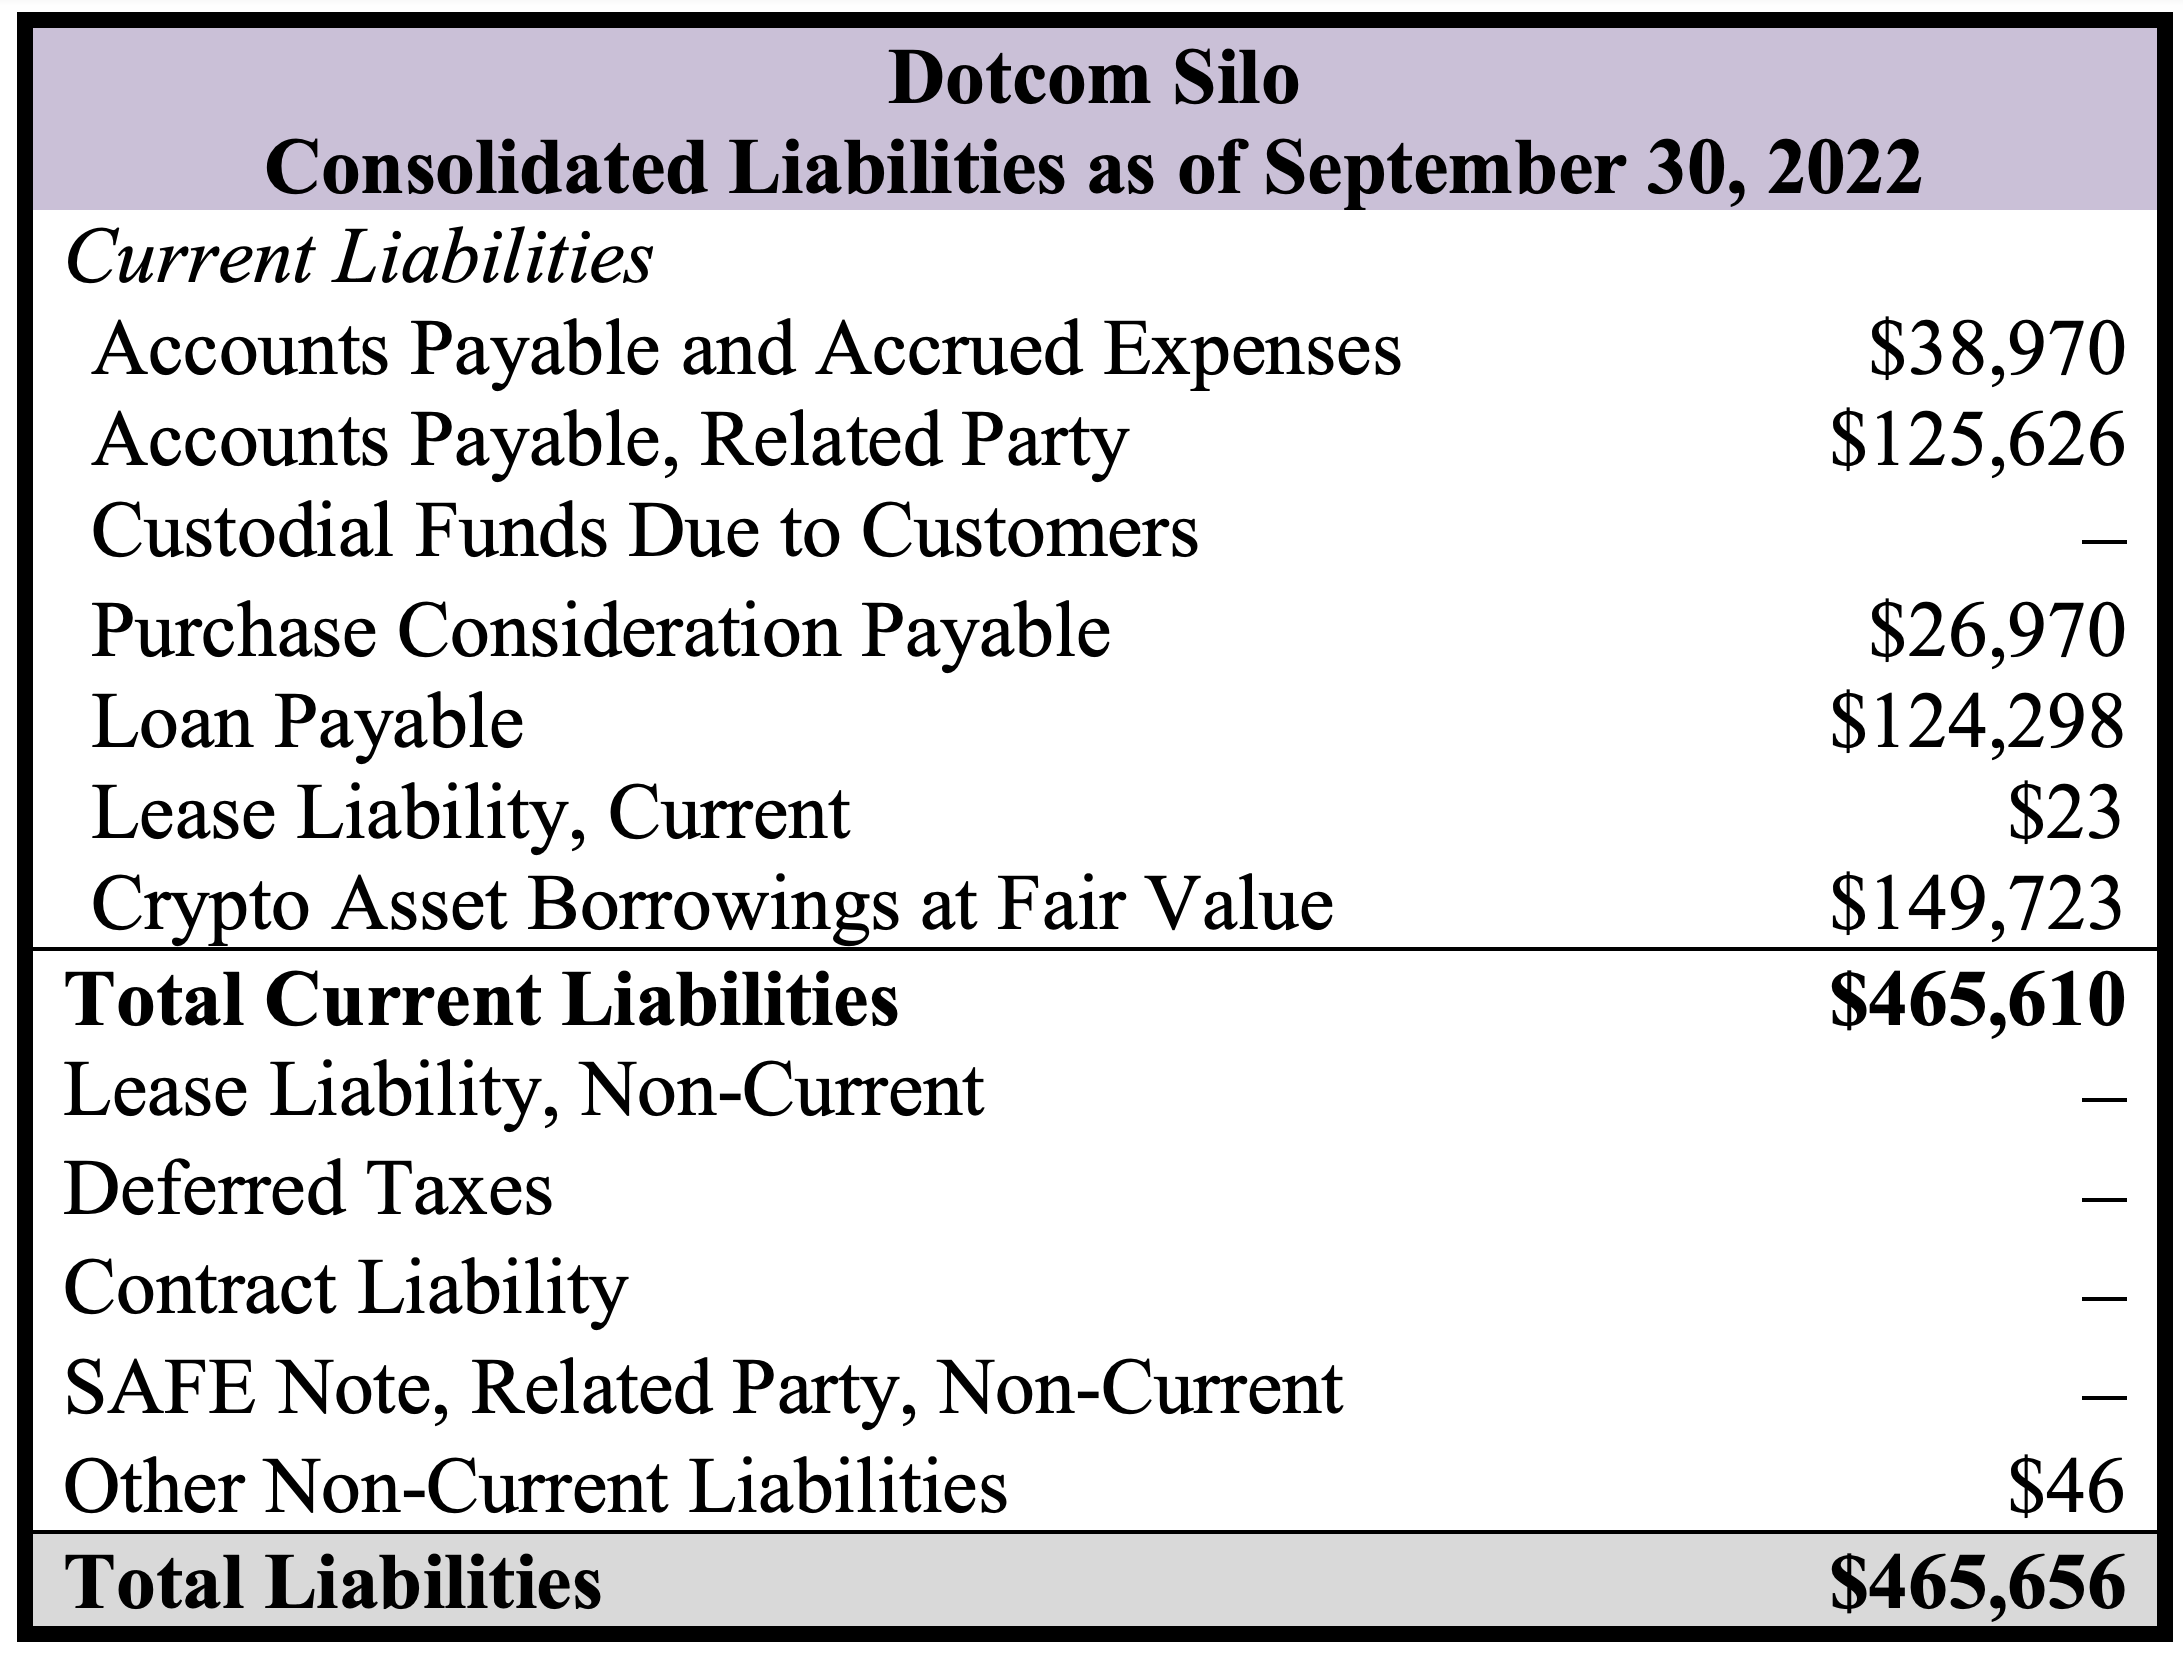 Dotcom Silo - Liabilities as of September 30, 2022